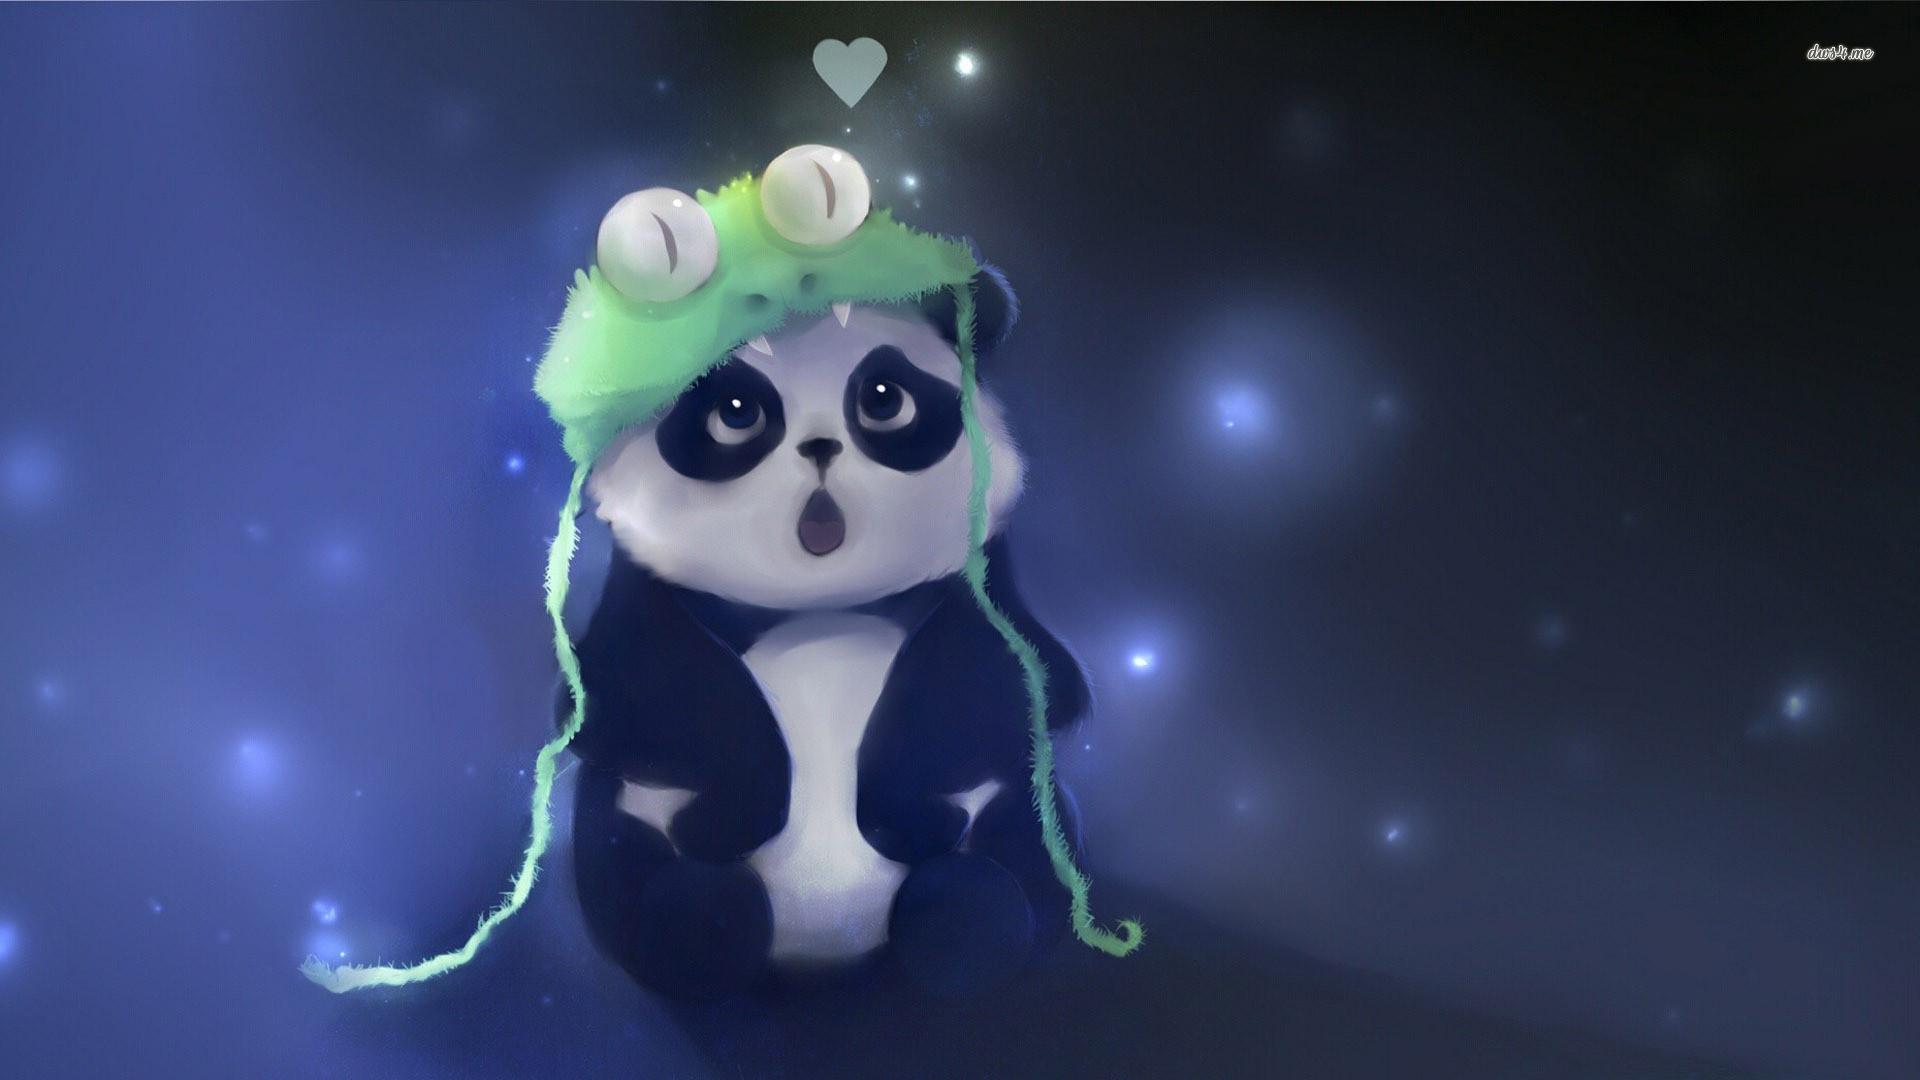 Cartoon Wallpaper Pandas Cute